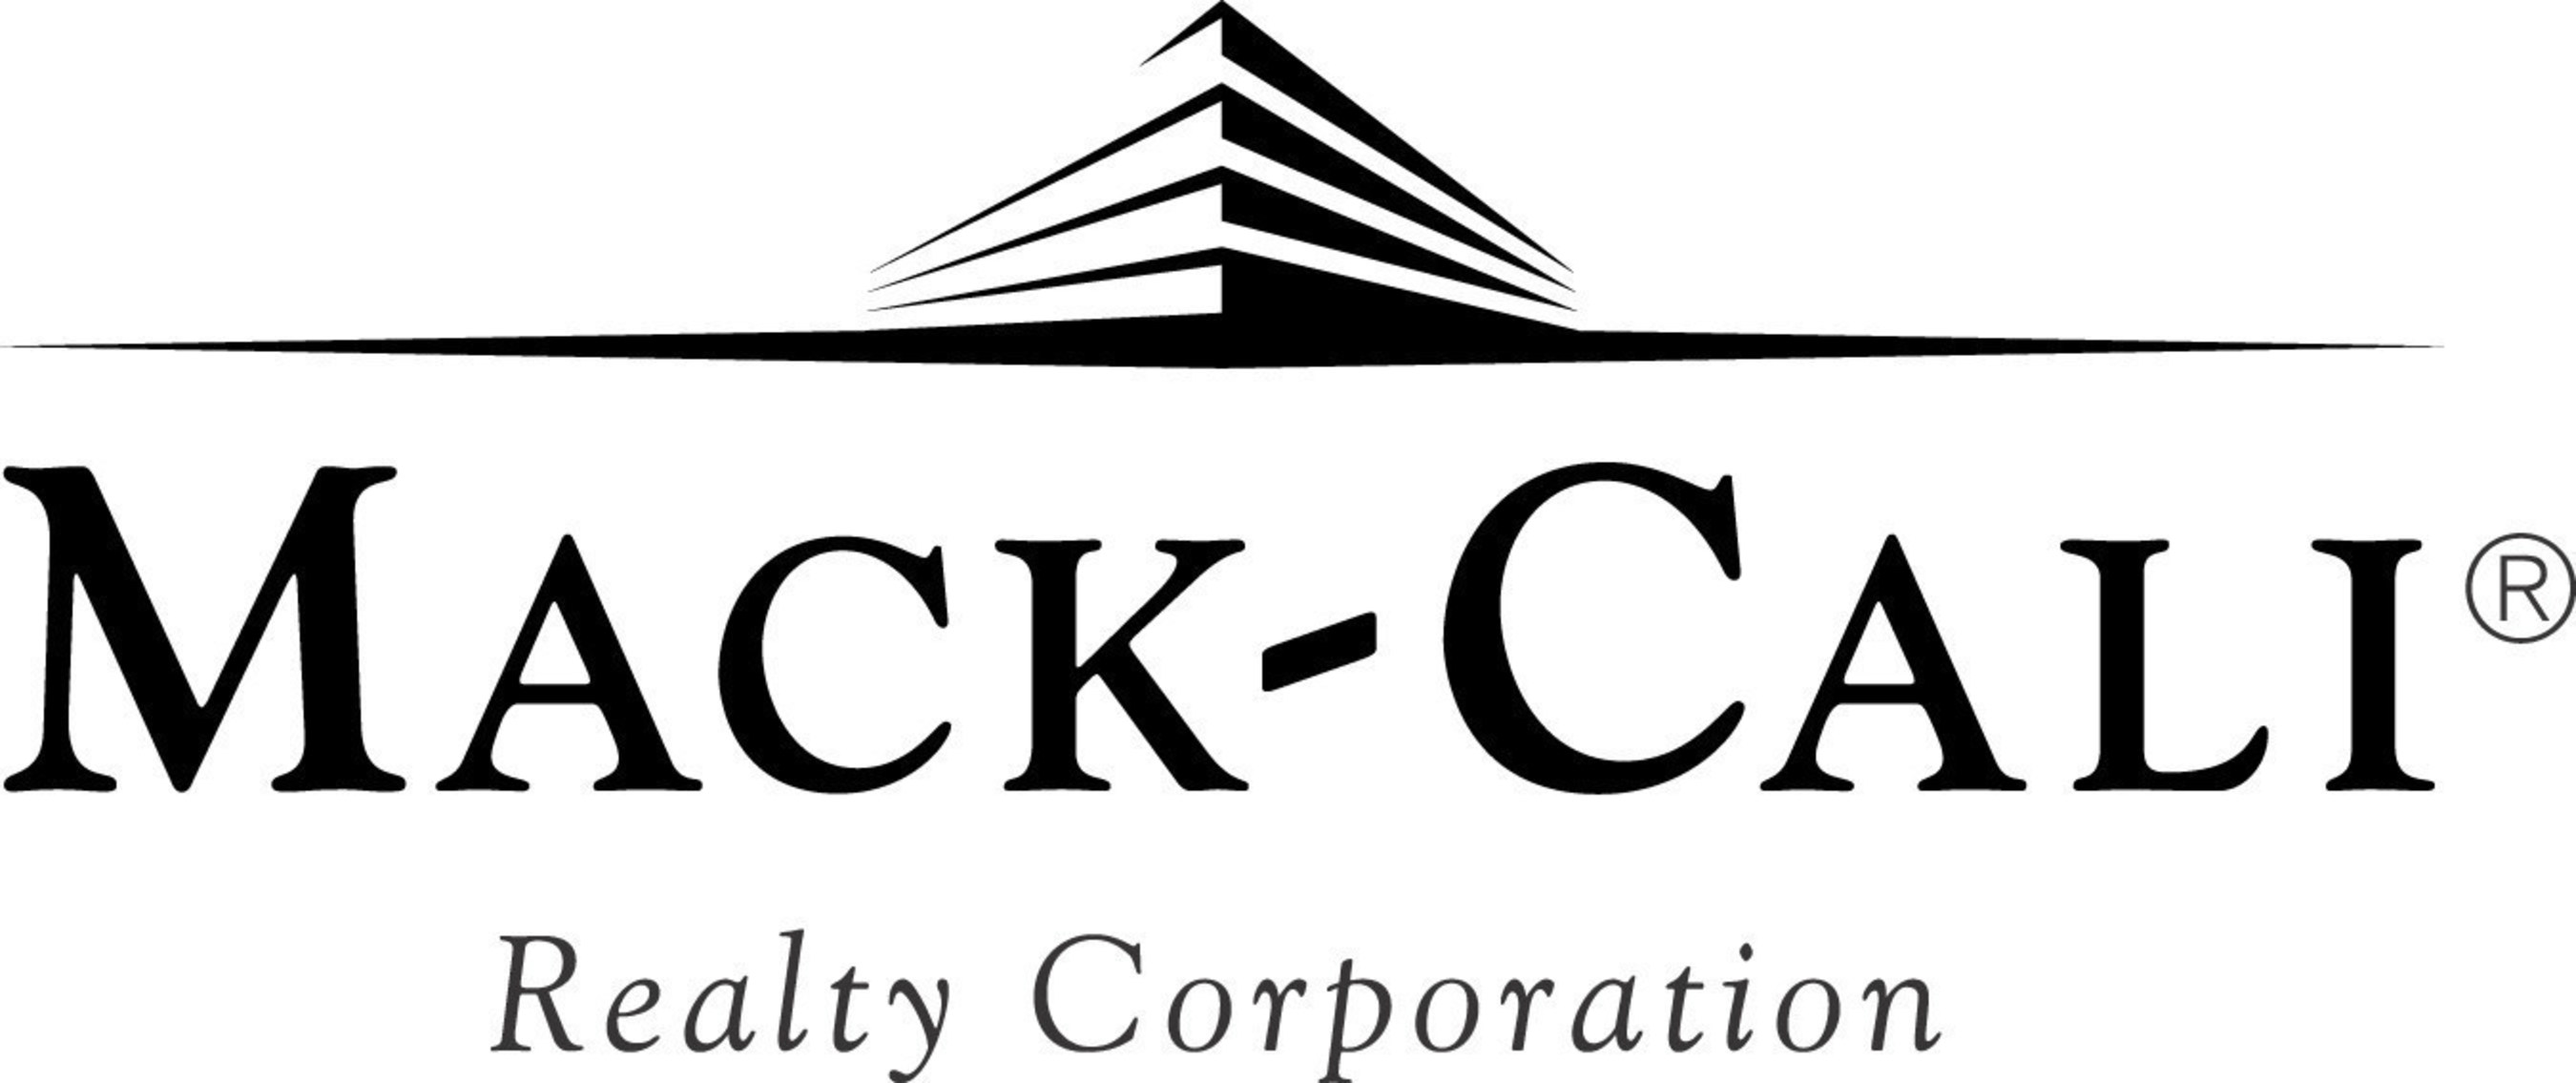 Mack-Cali Realty Corporation logo